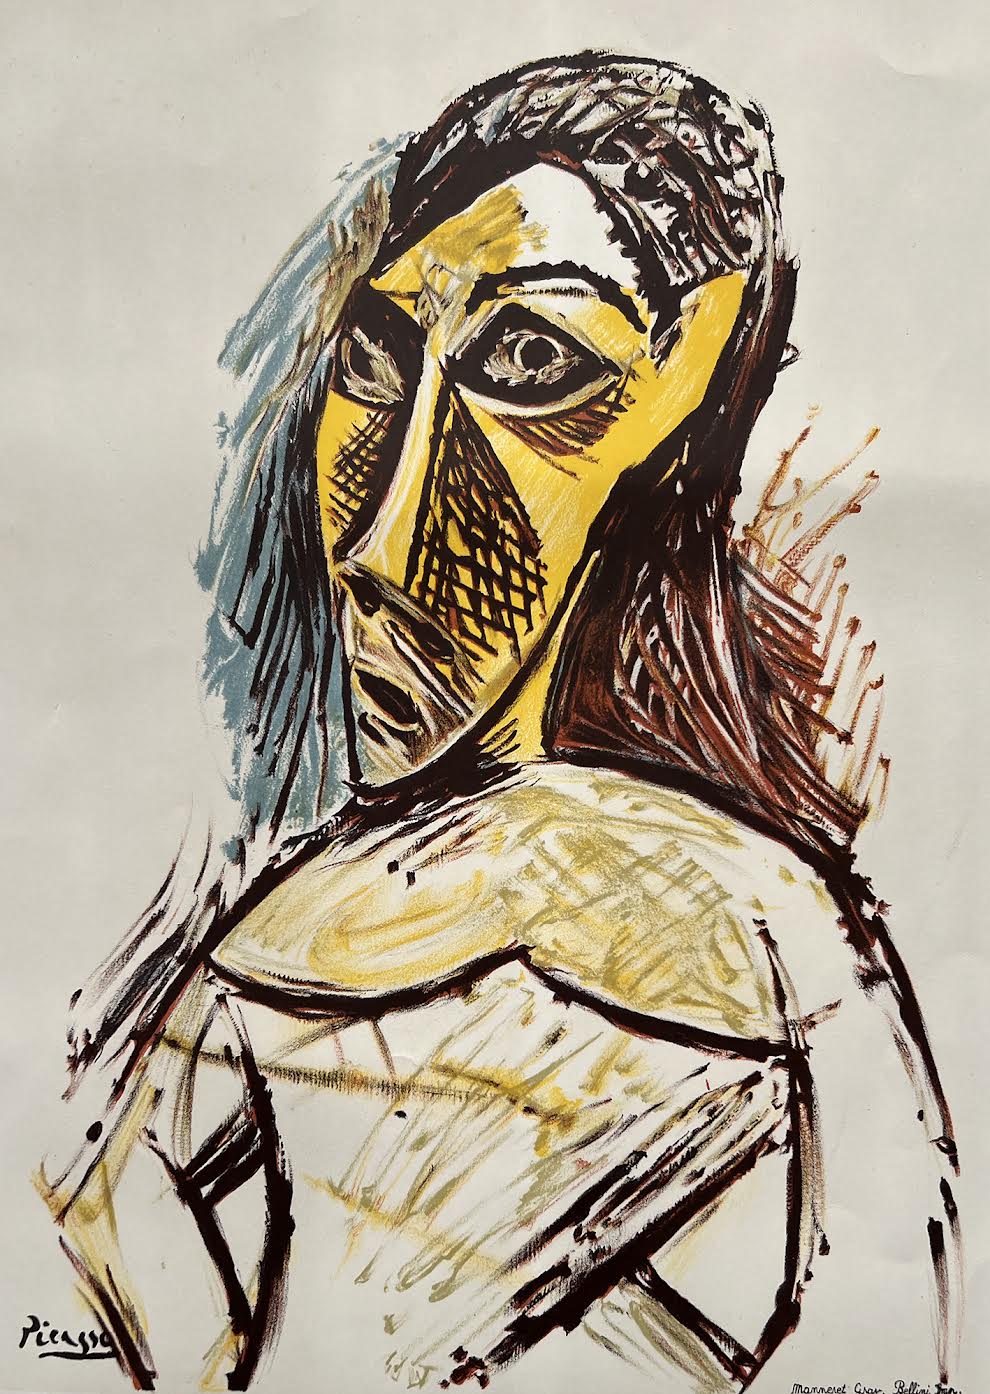 “Il Mito dell’Arte Africana nel ‘900. Da Picasso a Man Ray, da Calder a Basquiat e Matisse” APERTURA AL PUBBLICO SABATO 25 MARZO TRIESTE, PORTO VECCHIO, MAGAZZINO 26